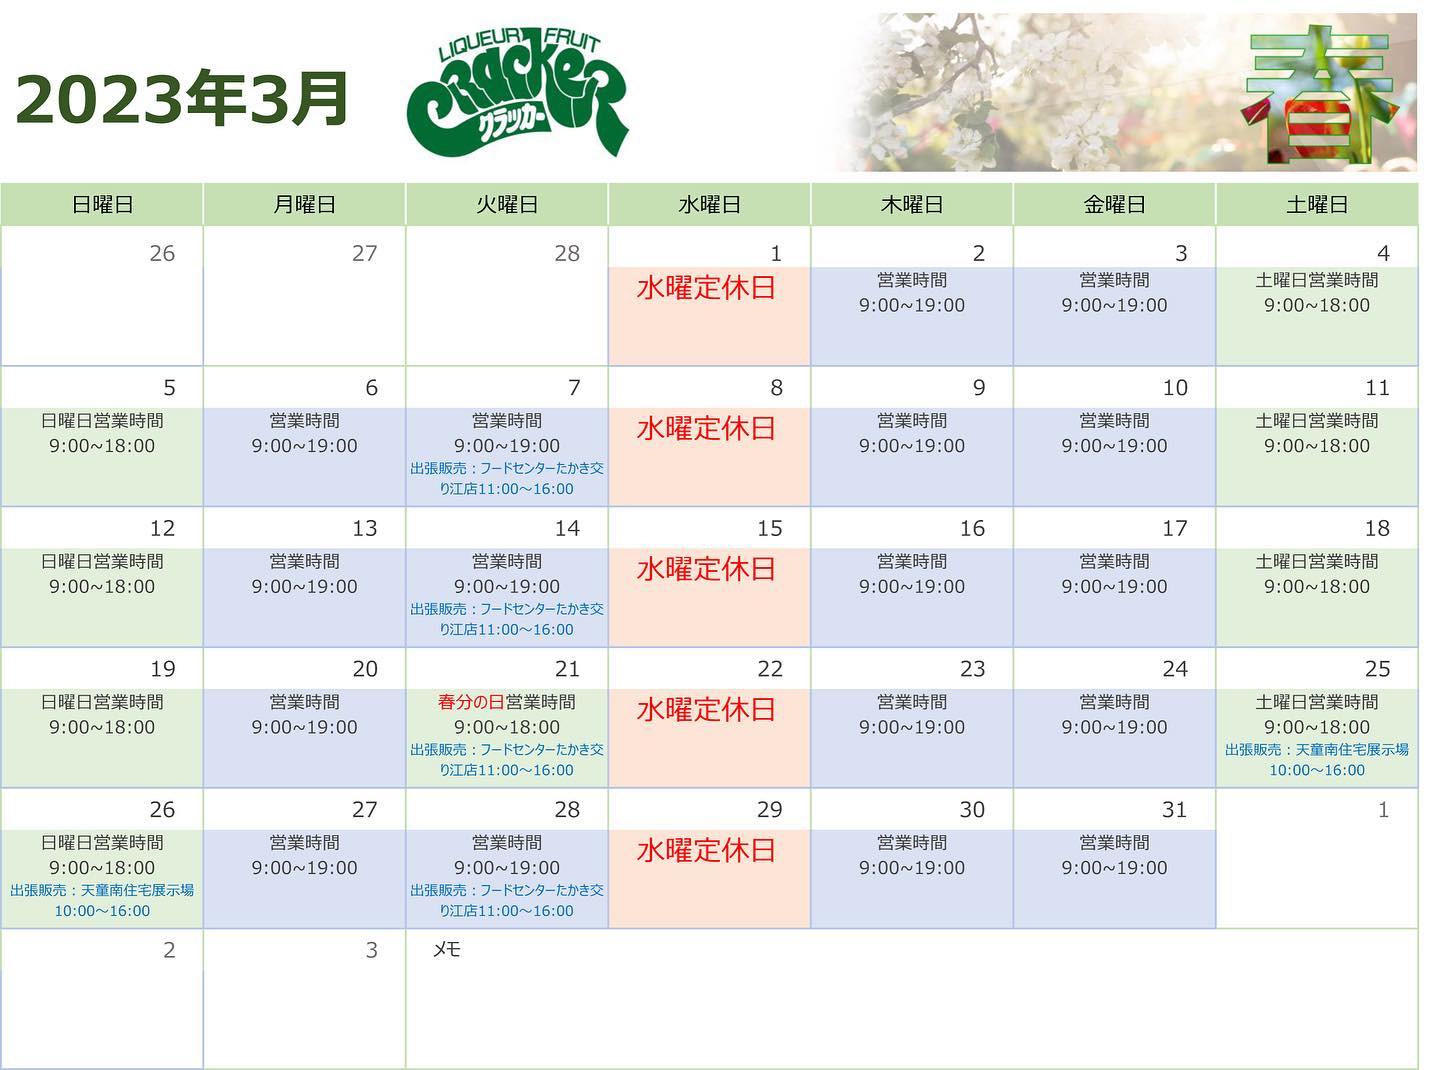 クラッカー3月の営業カレンダーです。出張販売は随時追加されますが、カレンダーに反映されない場合もあります。